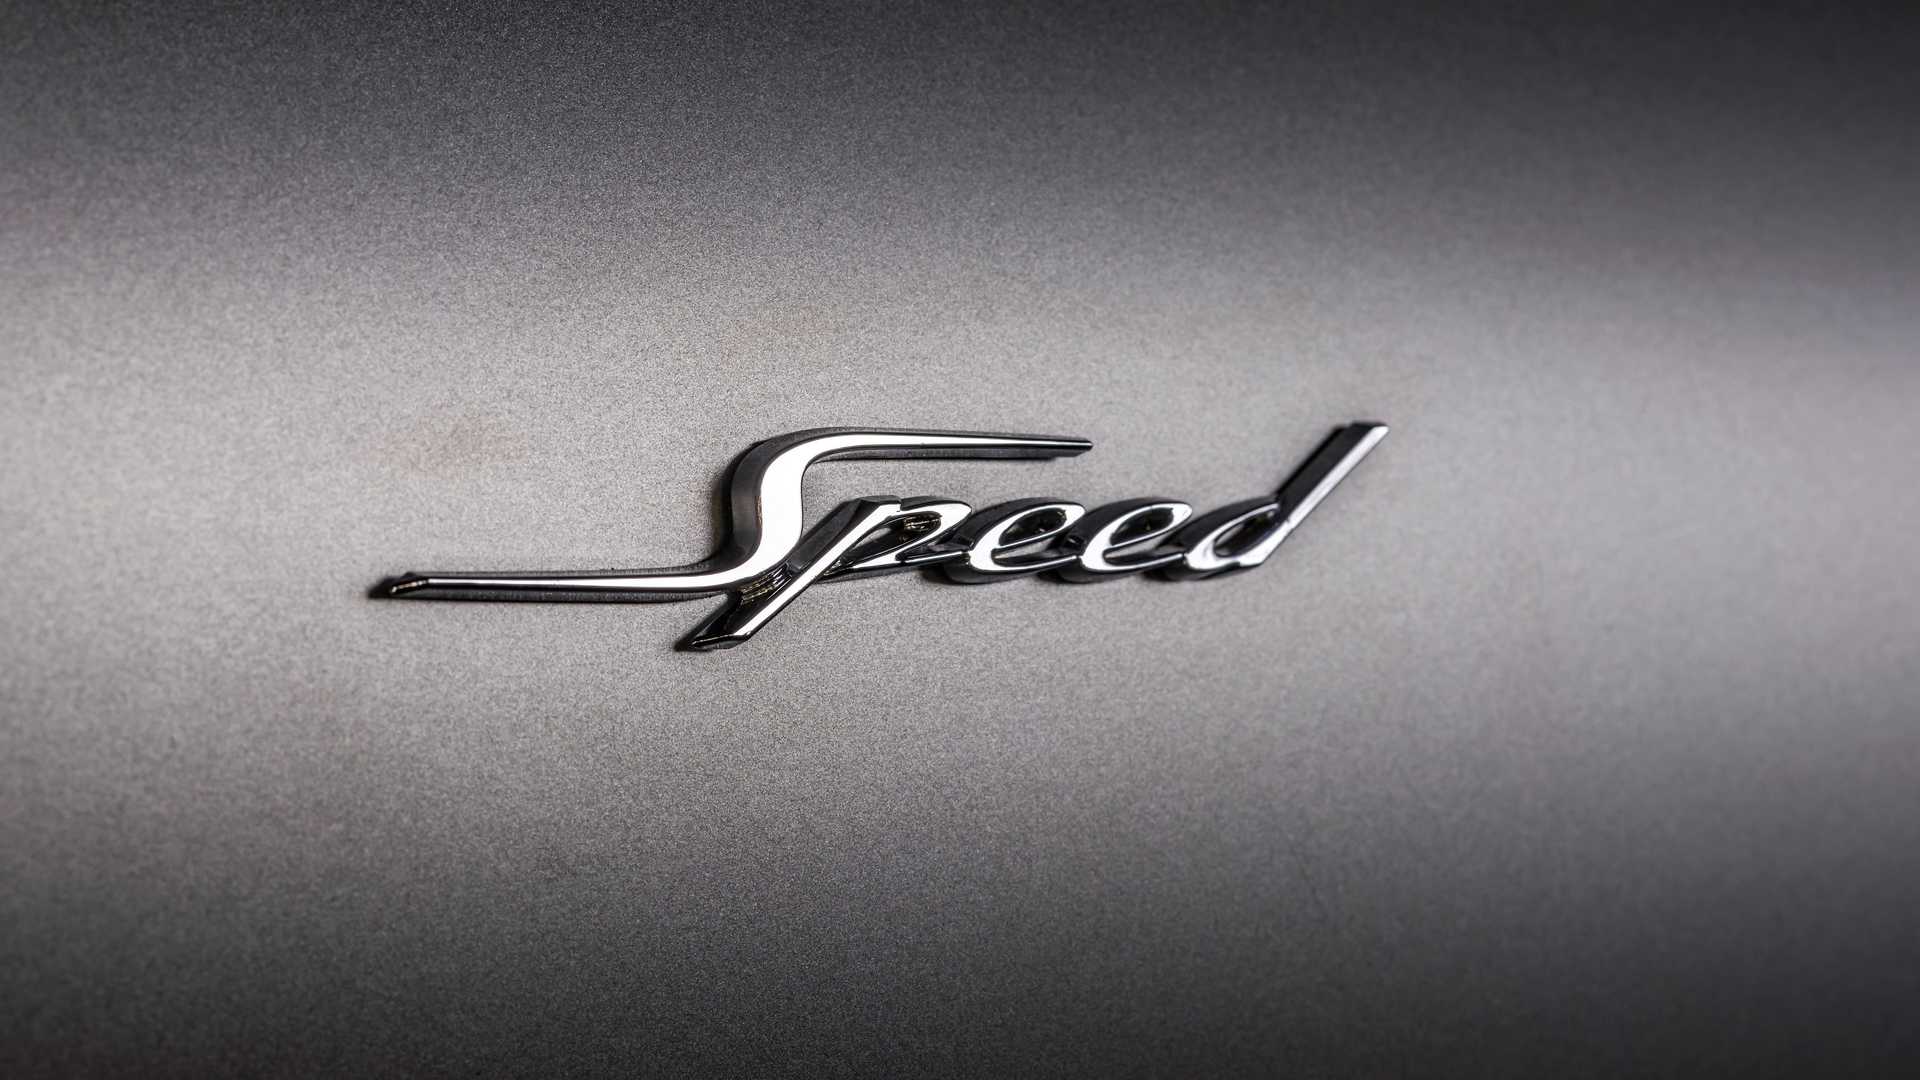 بنتلي كونتيننتال GT سبيد تنطلق رسمياً كأقوى سيارة في تاريخ العلامة 15